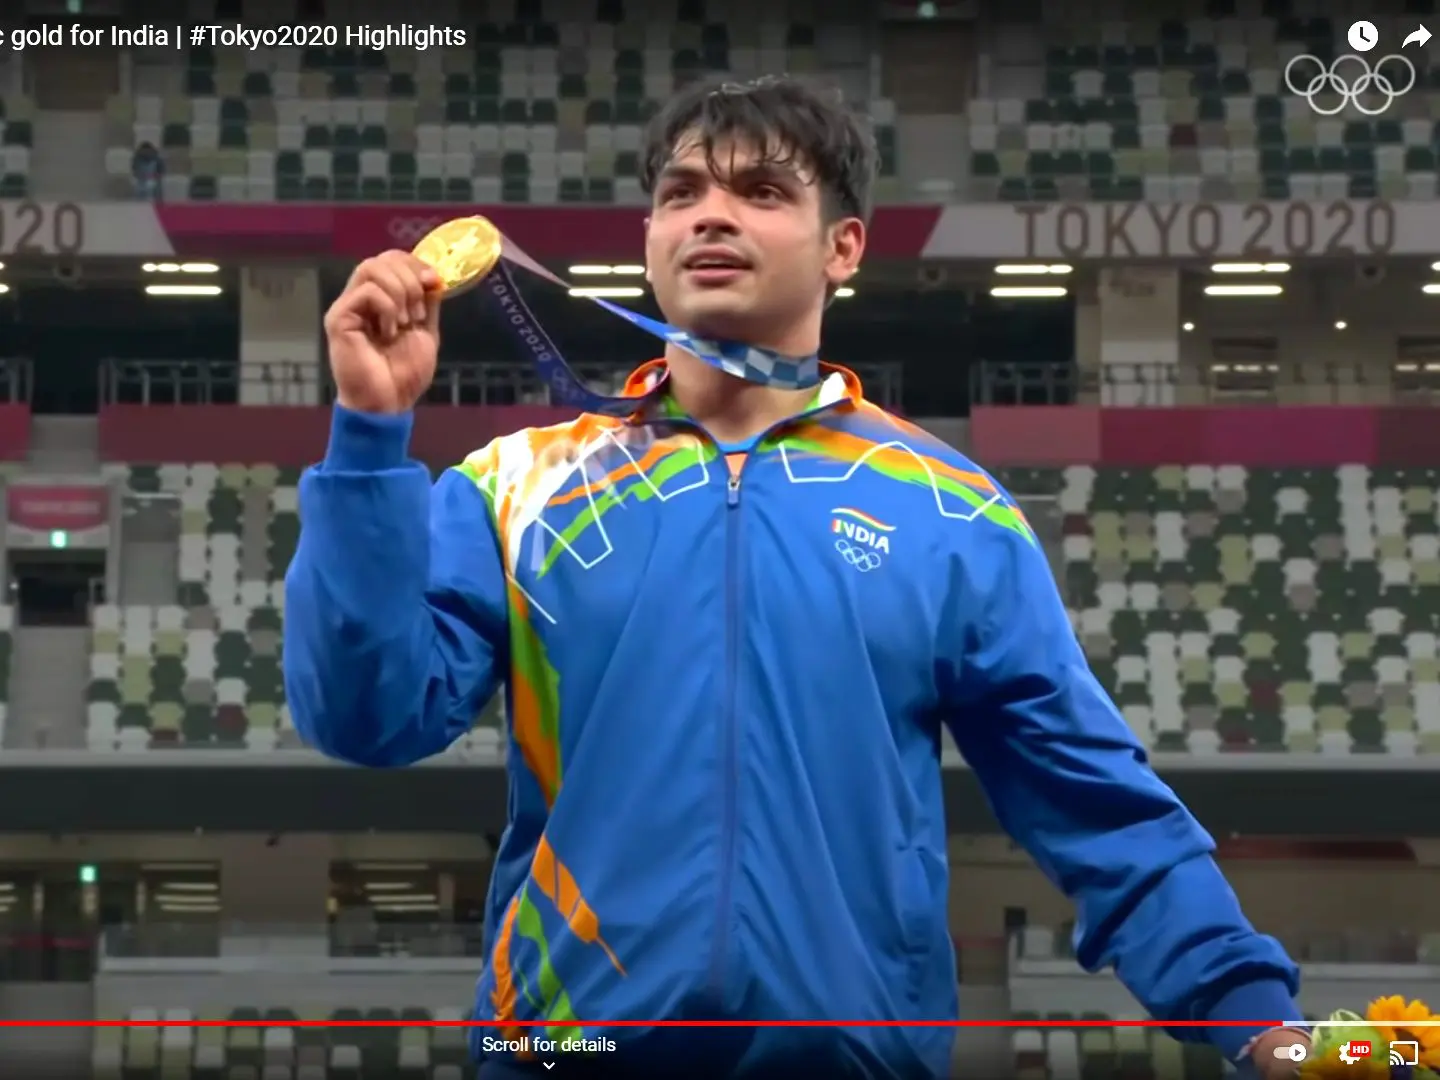 Lanzador de jabalina de la India hace historia en los Juegos Olímpicos de Tokio